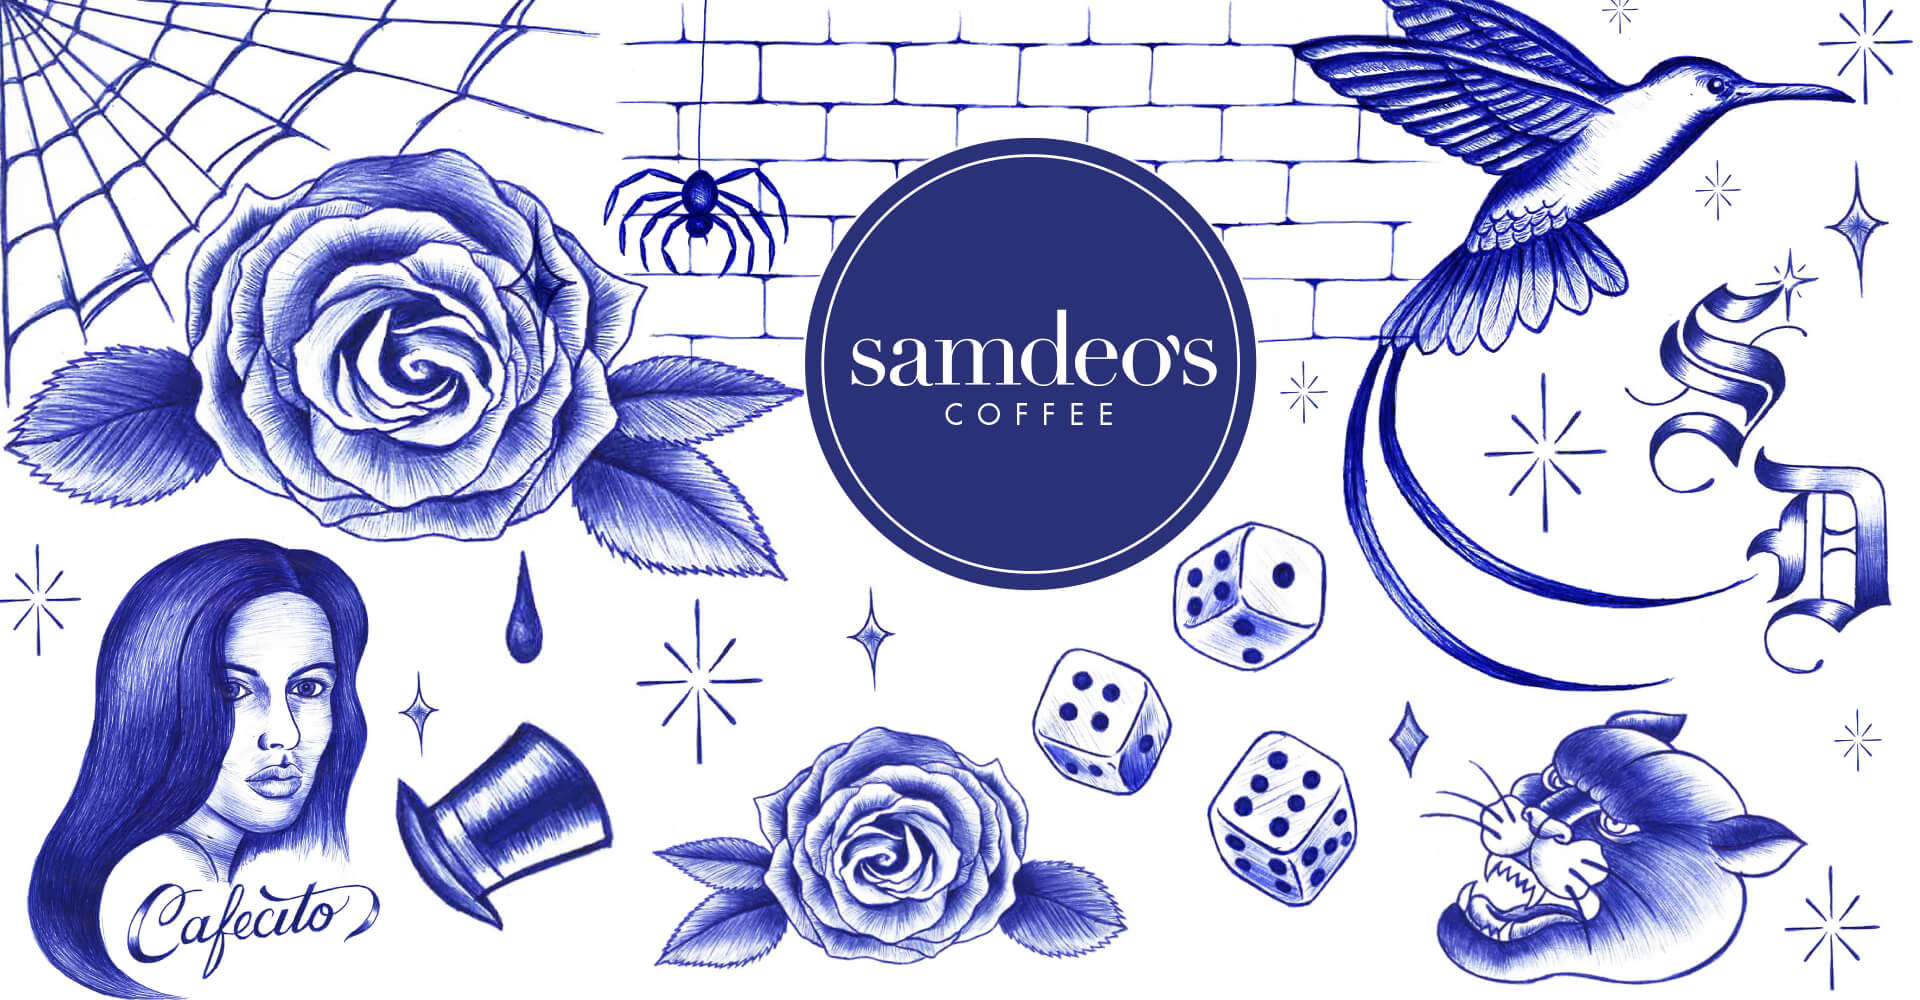 Samdeo's